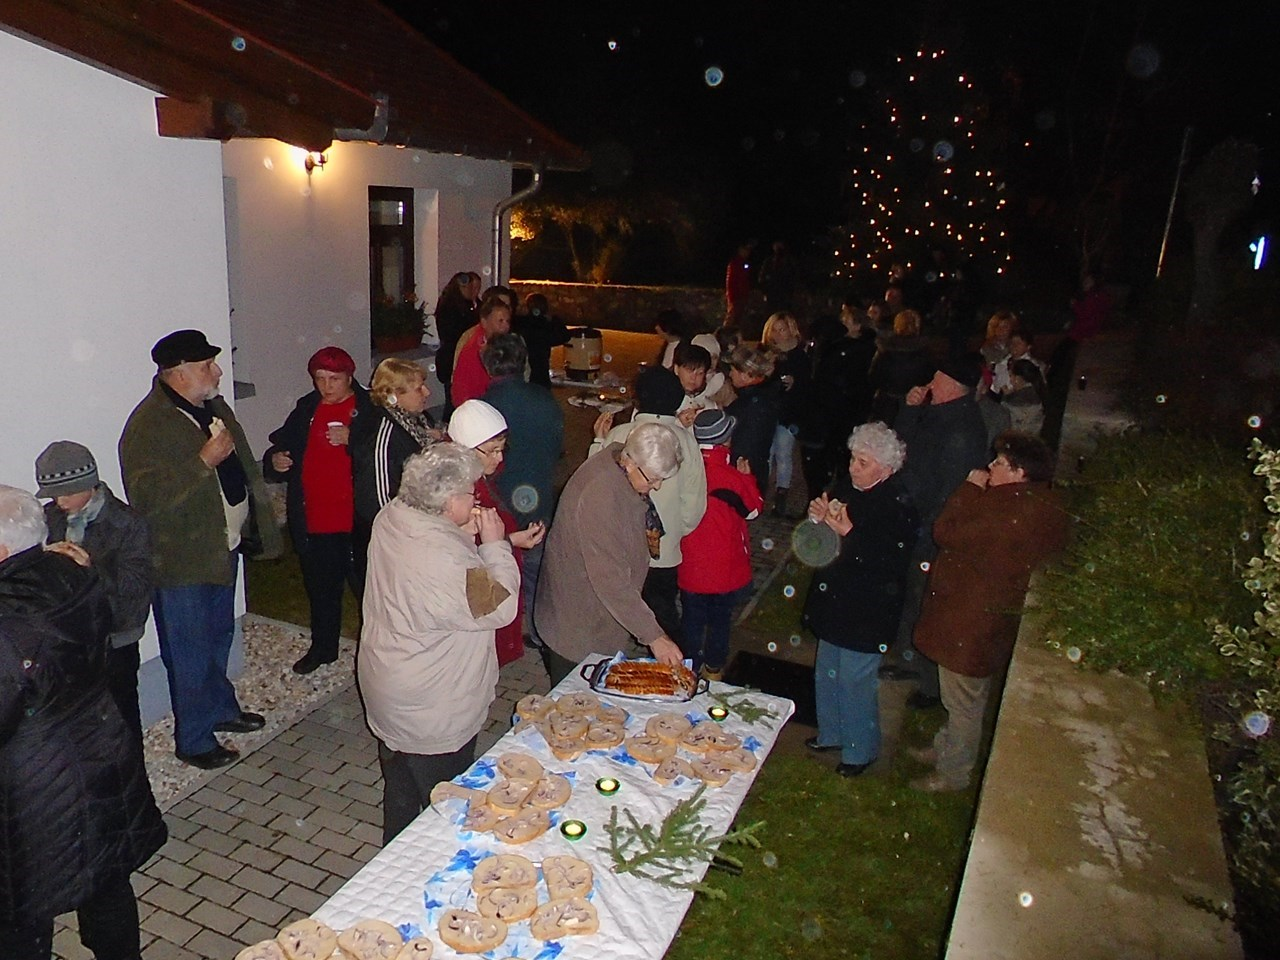 pedig az Újévi csobbanás előhangja következett. A szervezők itt is megvendégelték a kilátogatókat, a meleg teát Németh Zoltán, a forralt bort Czilli Károly és Töreki Zoltán főzték.